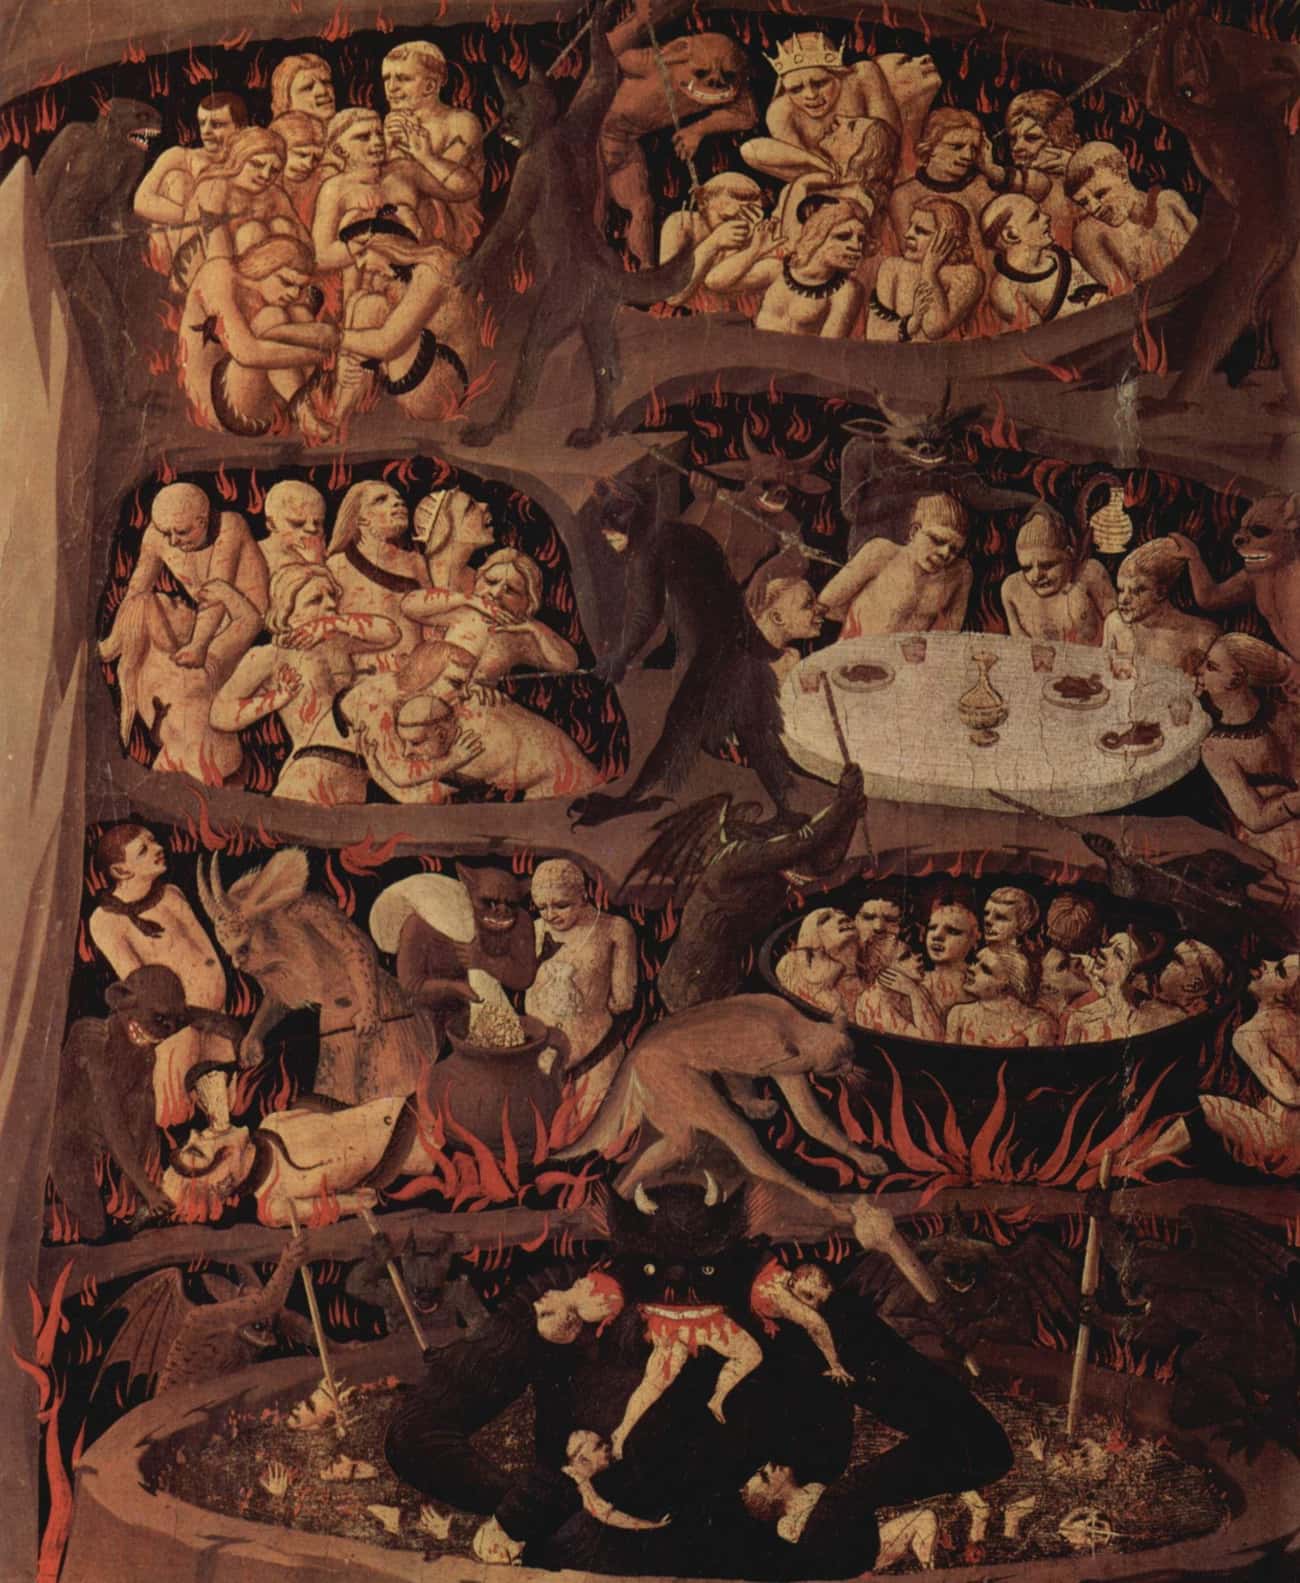 Das Jüngste Gericht — Fra Angelicoate, 1432-1435